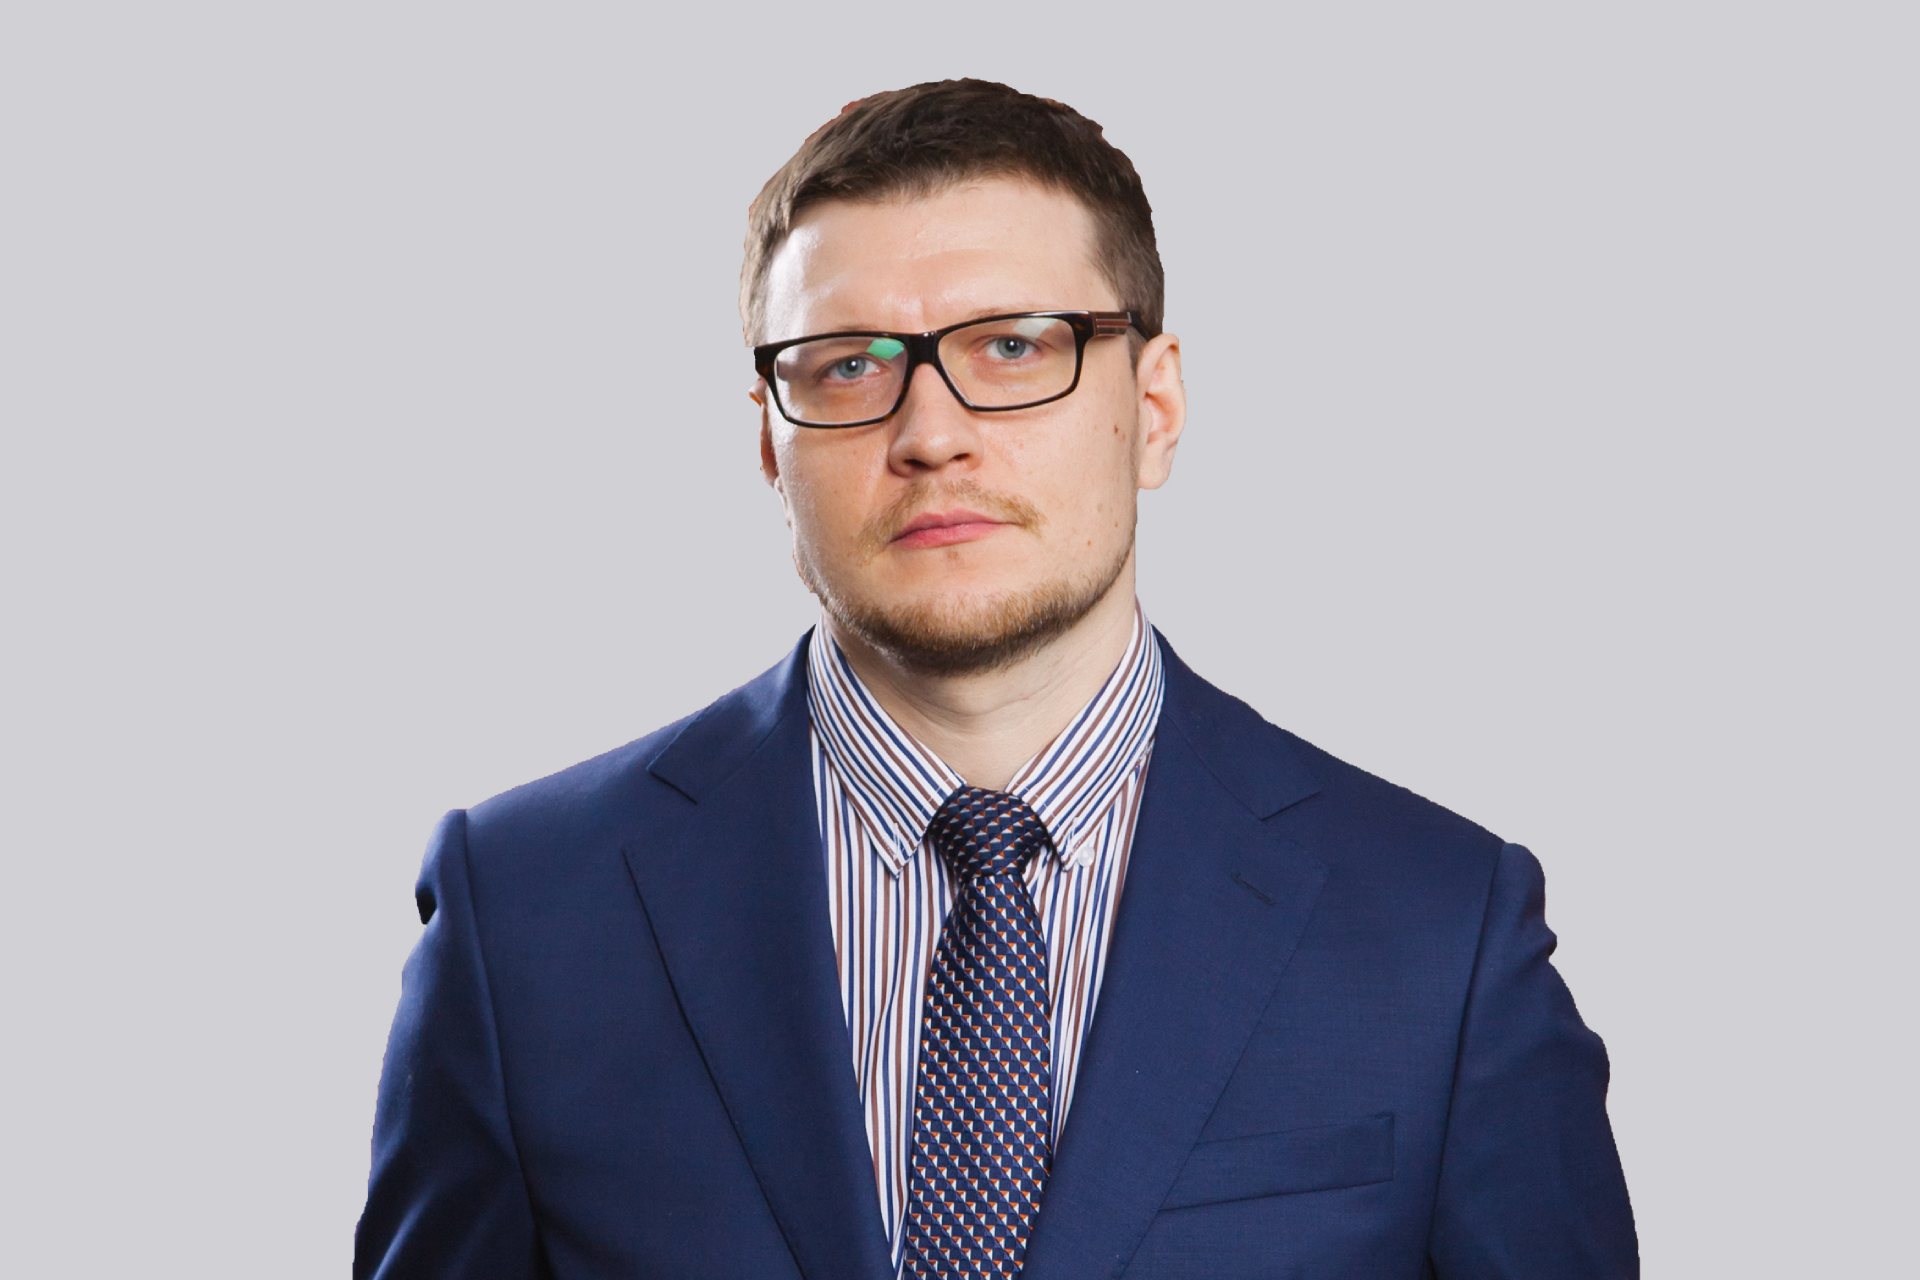 Кирилл Обедин — управляющий партнер компании ООО «Обедин и Партнеры»